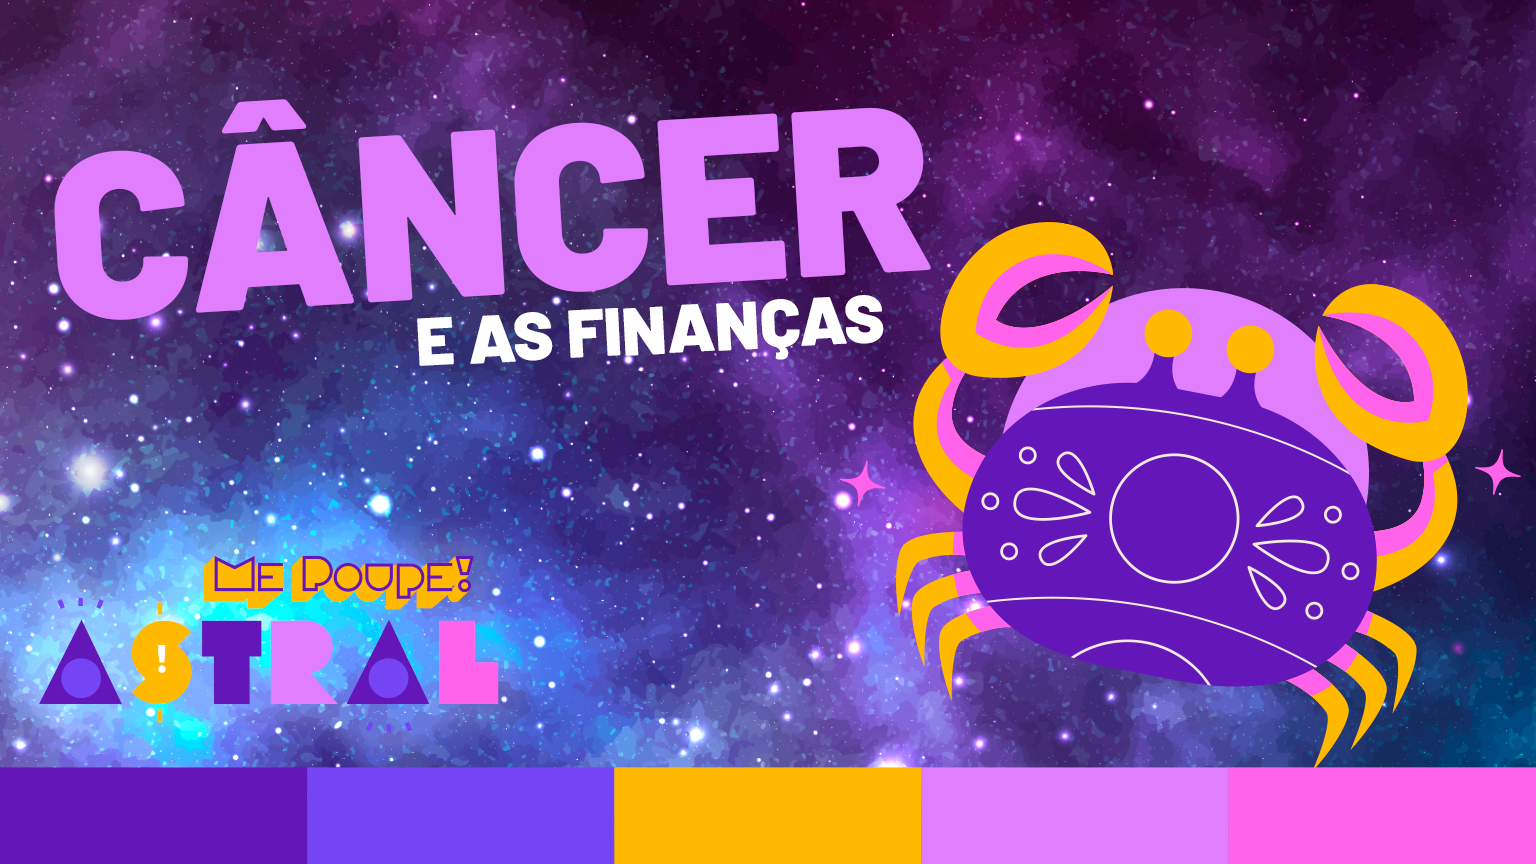 Me Poupe Astral: o signo de câncer nas finanças